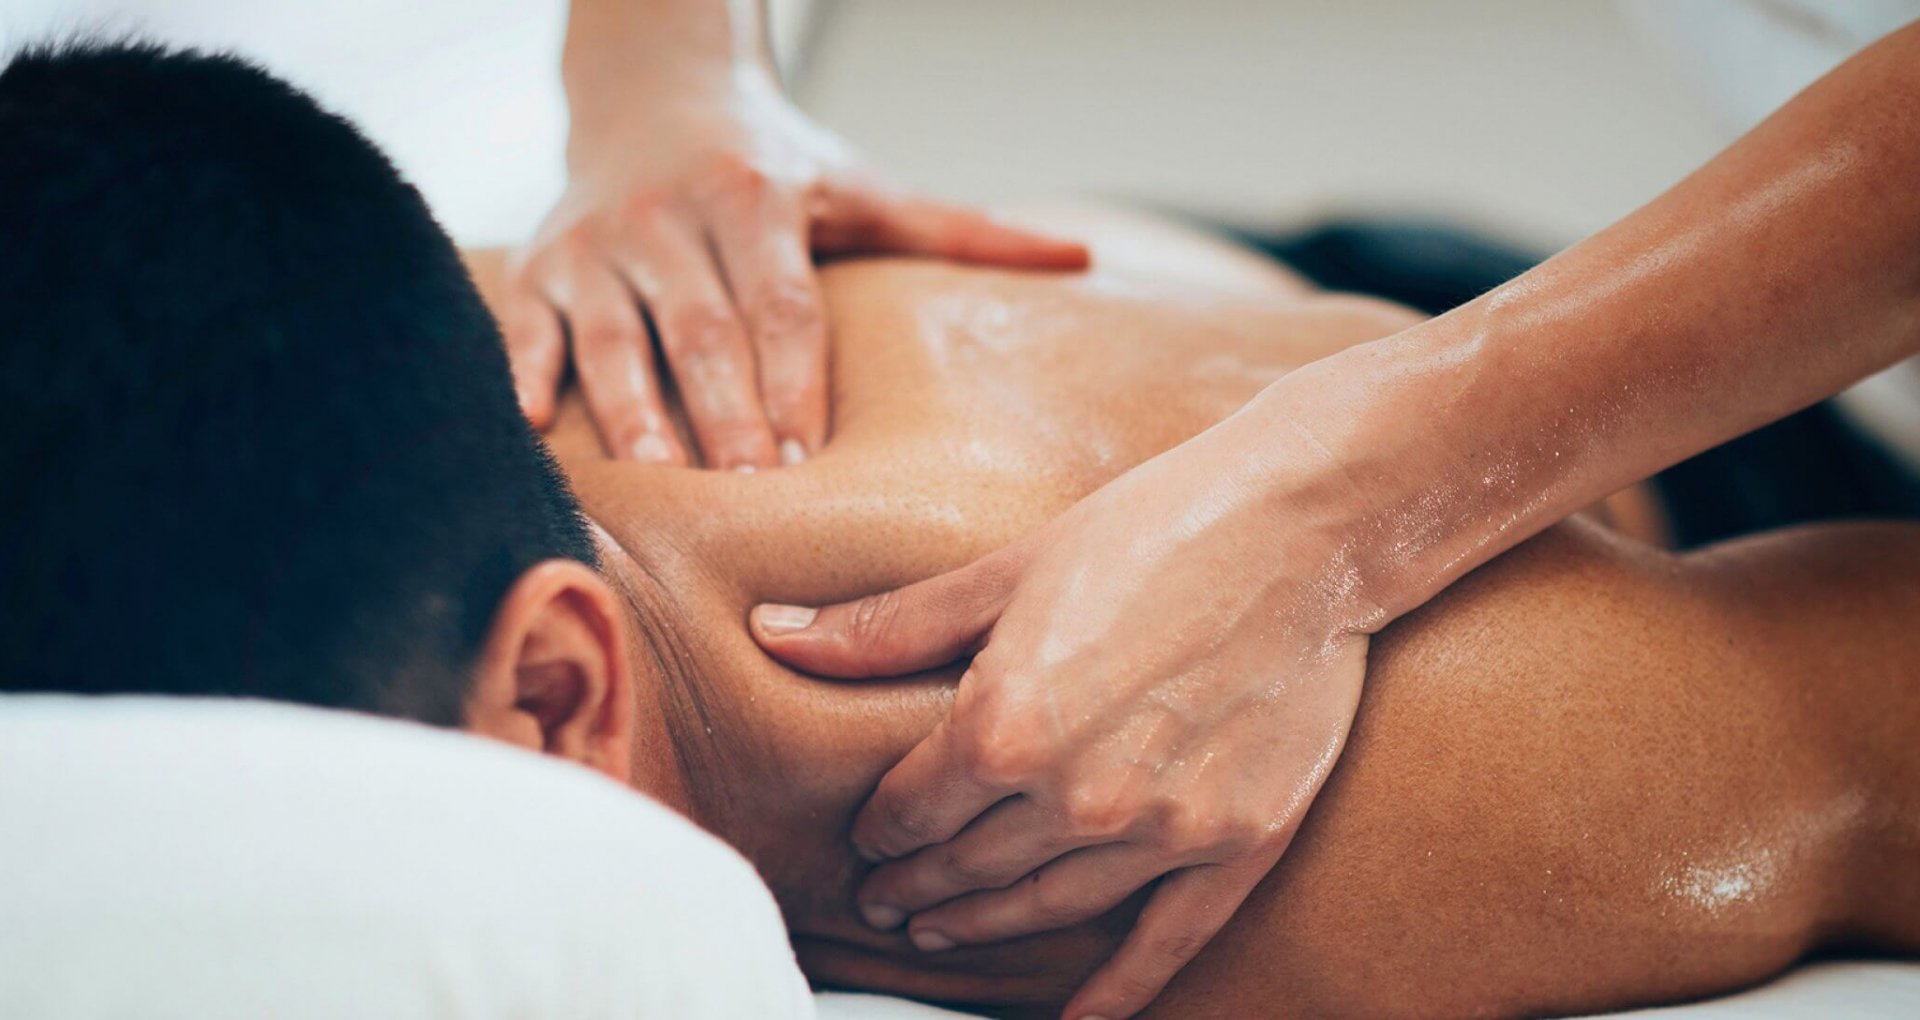 Не се хващайте на тази измама: Безплатен масаж няма 